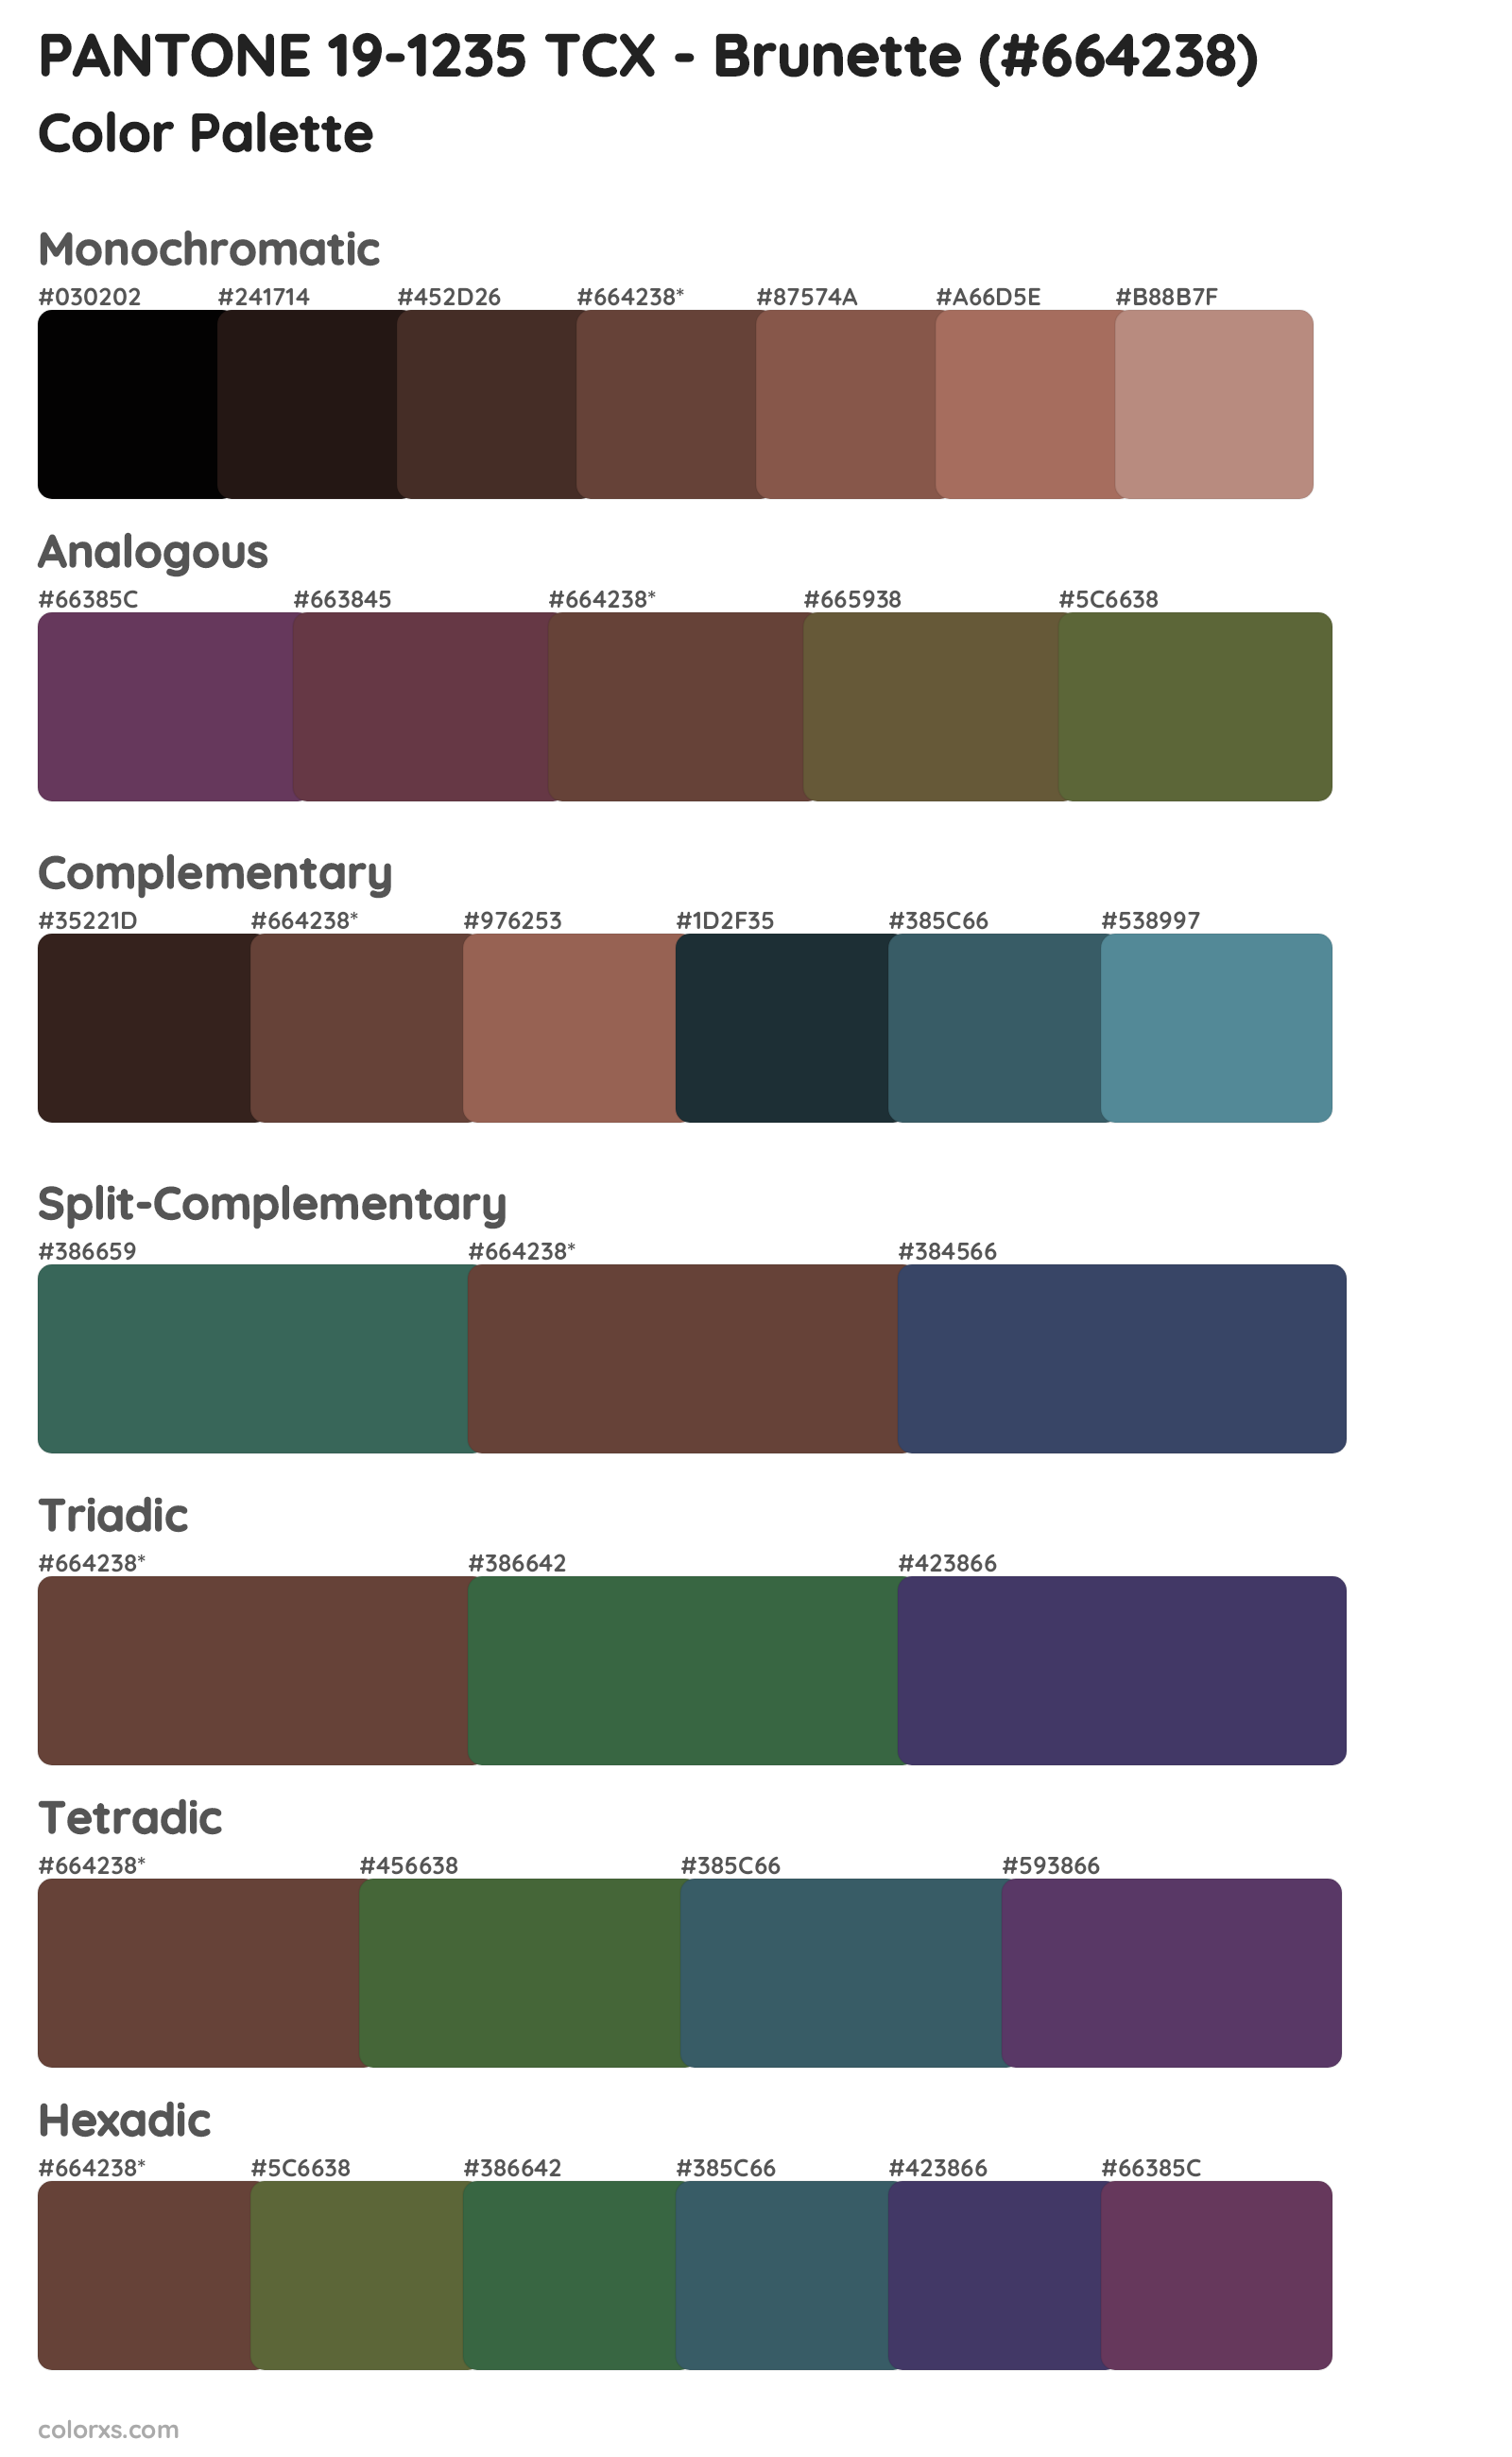 PANTONE 19-1235 TCX - Brunette Color Scheme Palettes